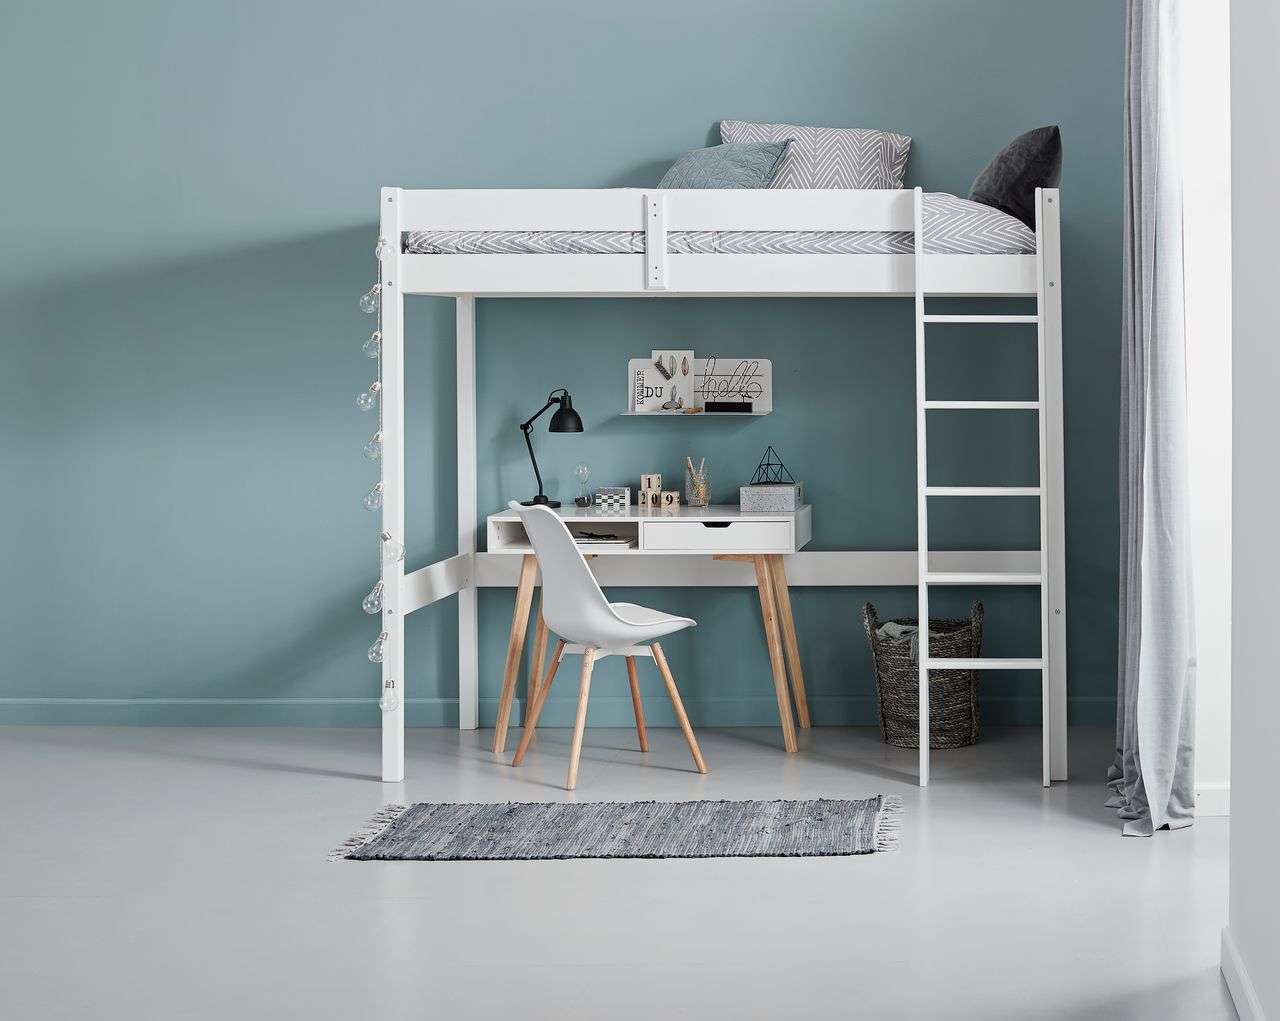 Giường tầng giúp tạo không gian rộng rãi và thoải mái cho phòng ngủ